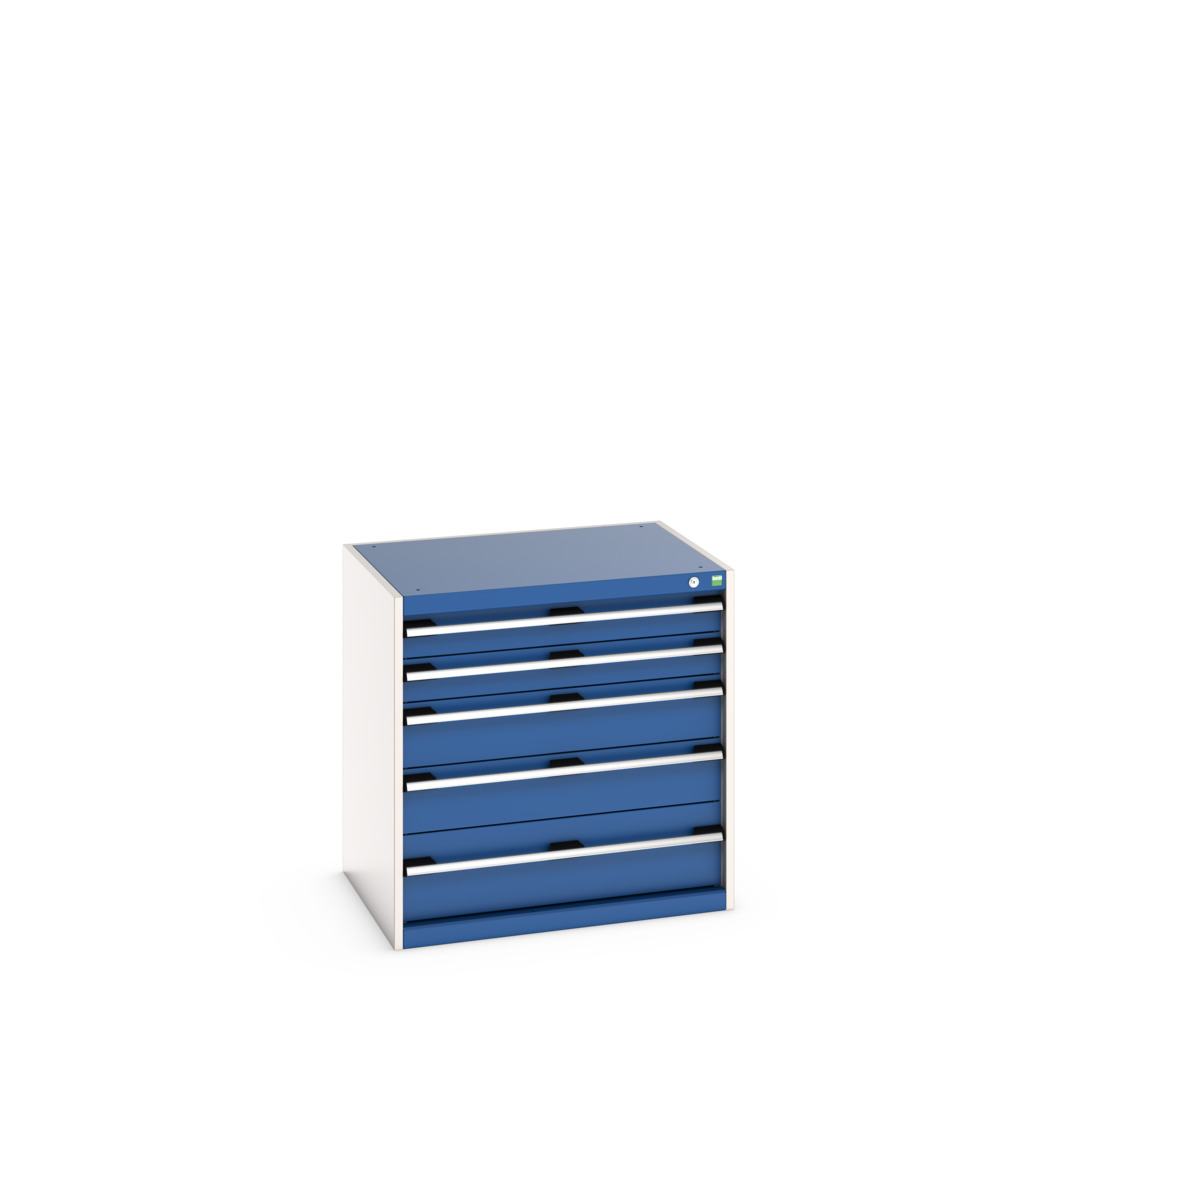 40020026.11V - cubio drawer cabinet